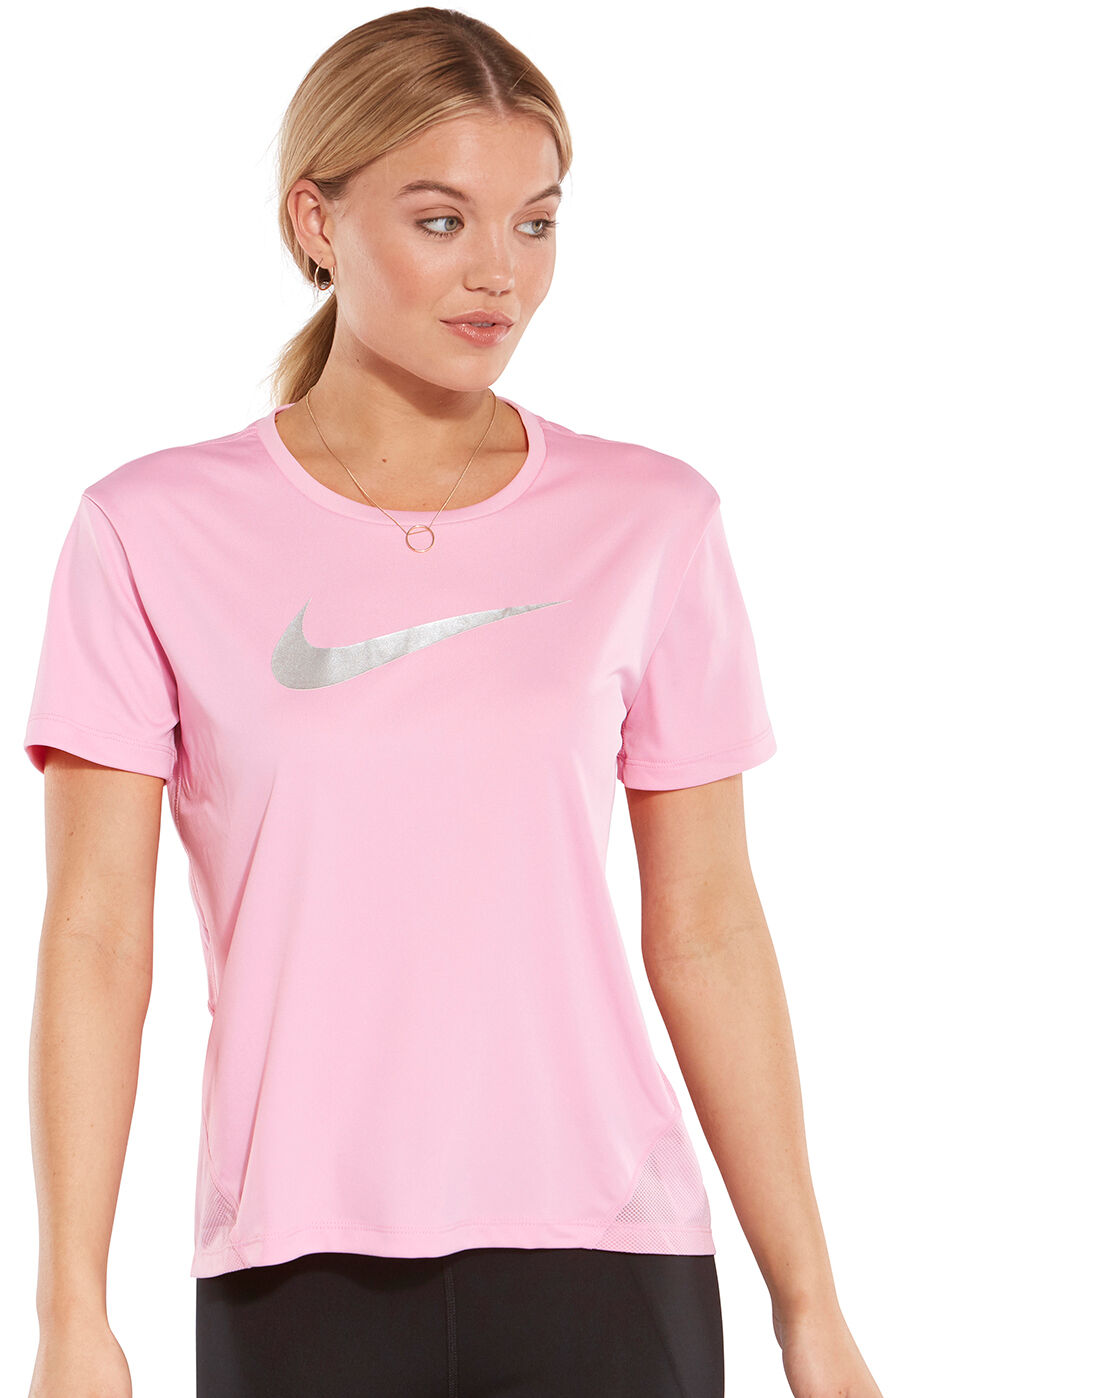 nike women's pink t shirt